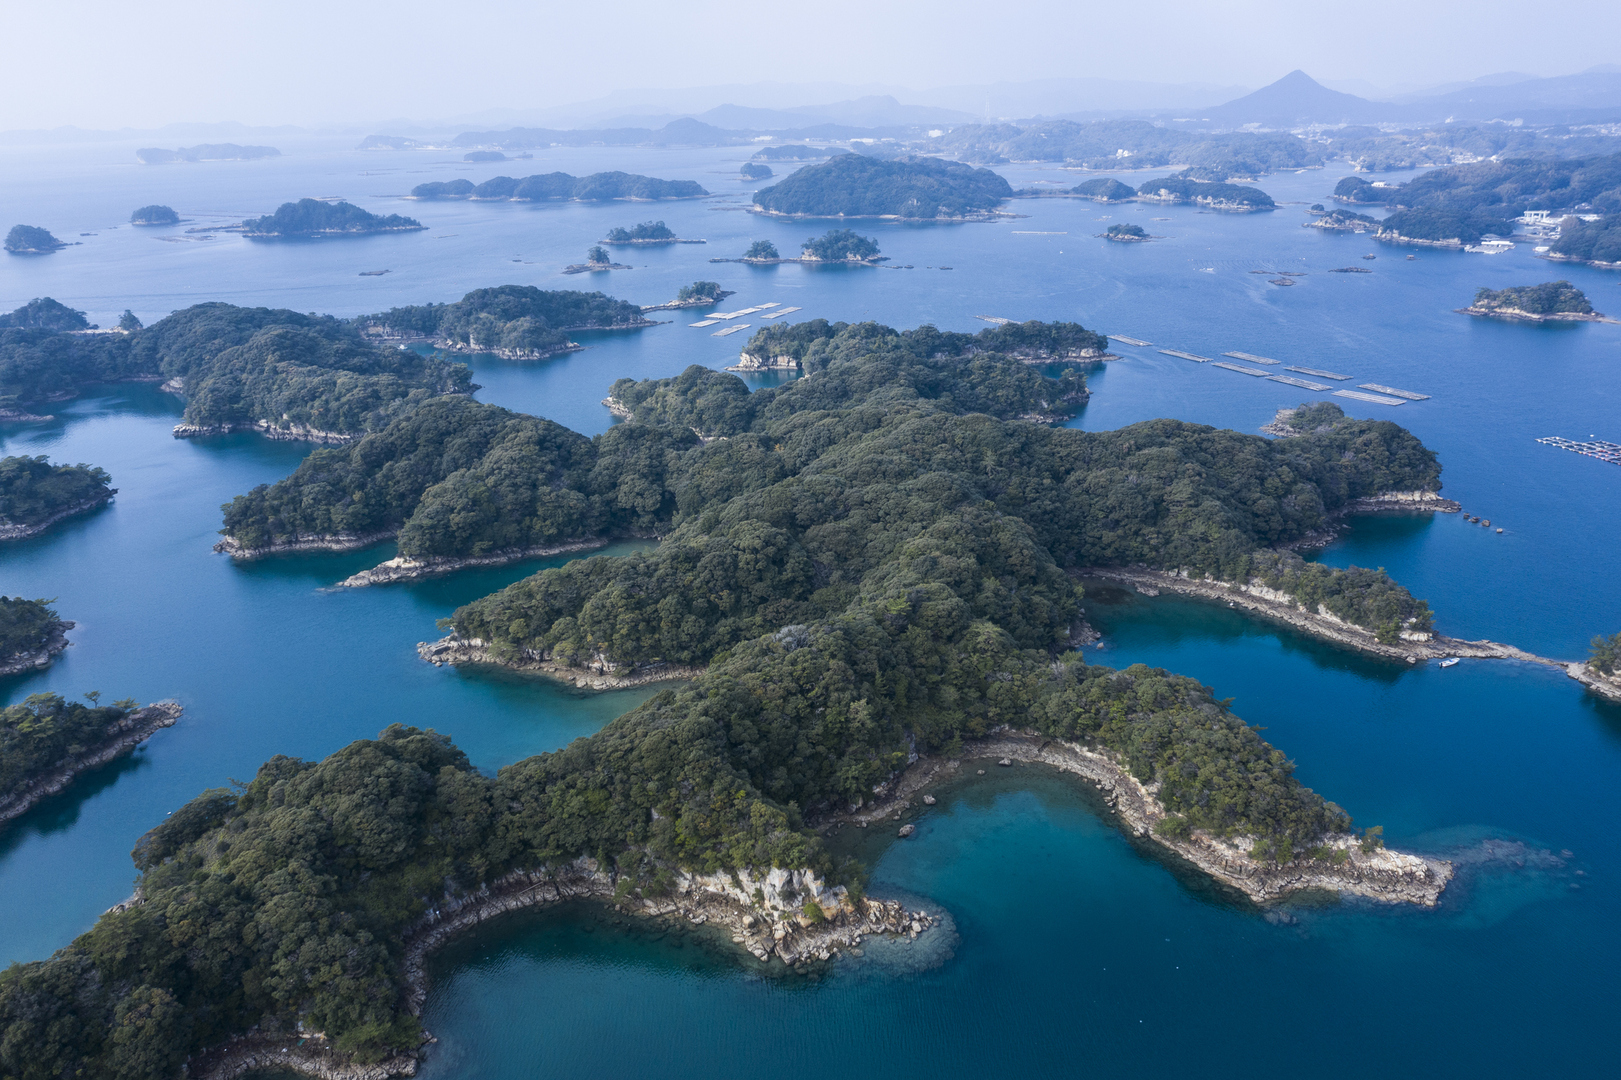 اليابان تعثر على 7 آلاف جزيرة لم تكن تعلم بوجودها ما يرفع عدد جزرها إلى الضعف